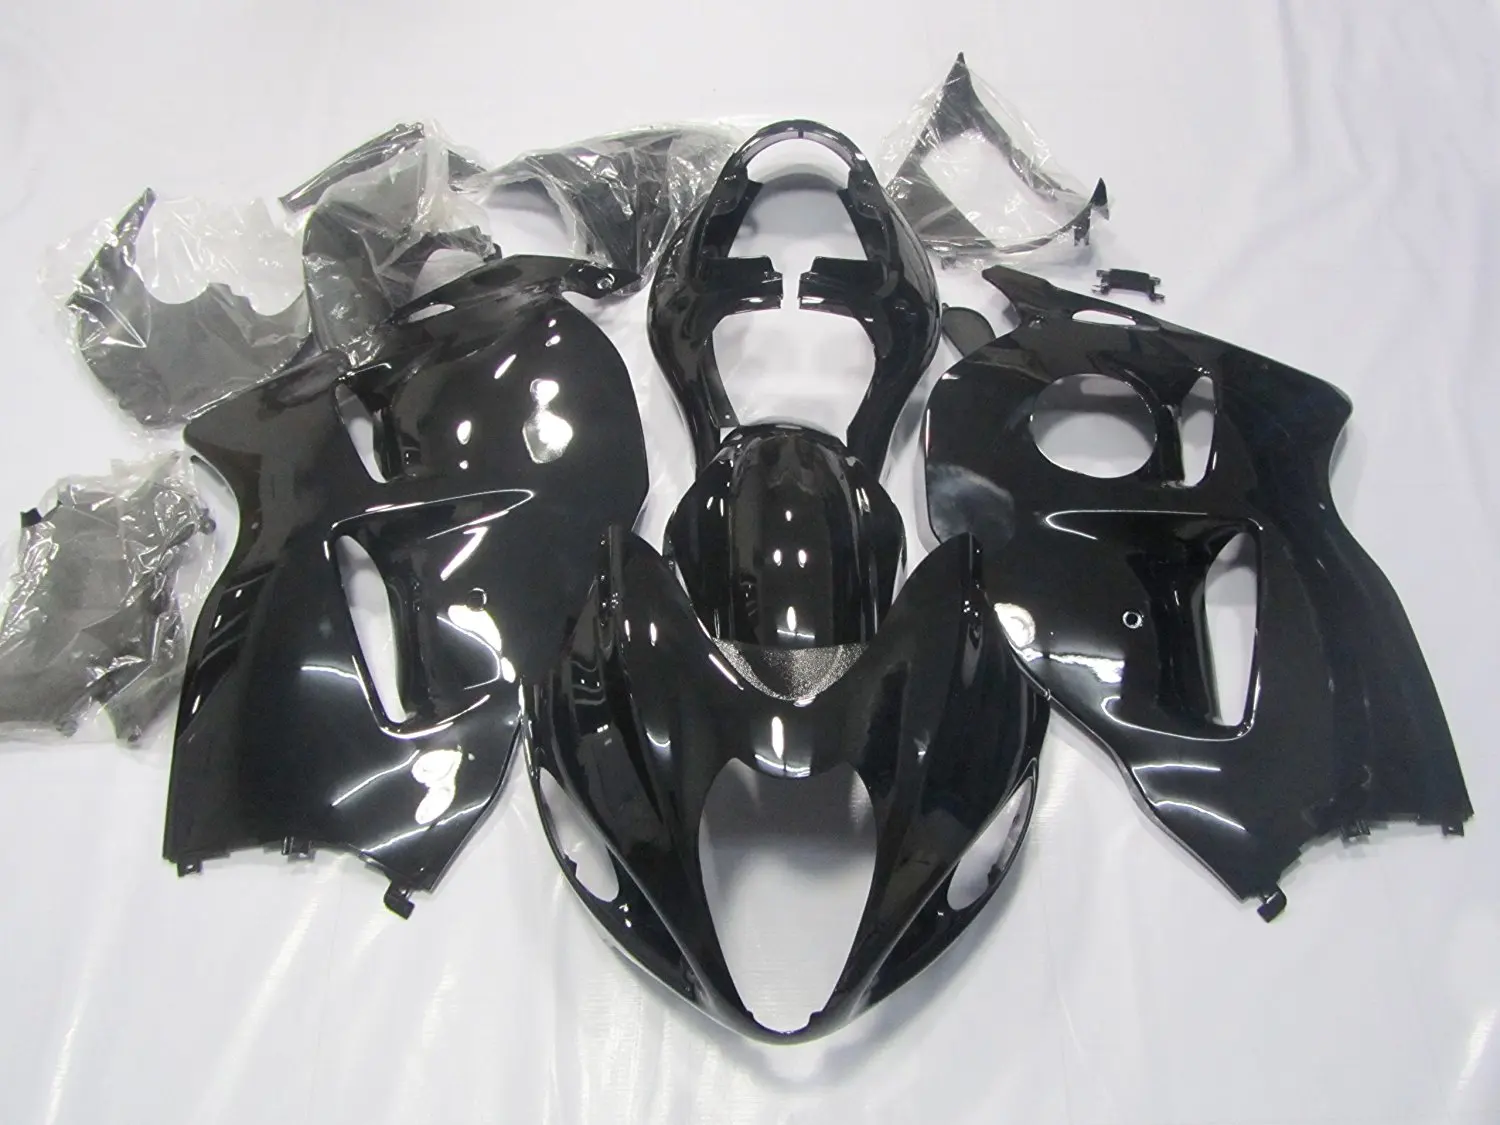 ZXMOTO Unpainted bodywork front fender fairing kit for SUZUKI GSXR 1000 2000 2001 2002 SUZUKI GSXR 600 GSXR 750 2001 2002 2003